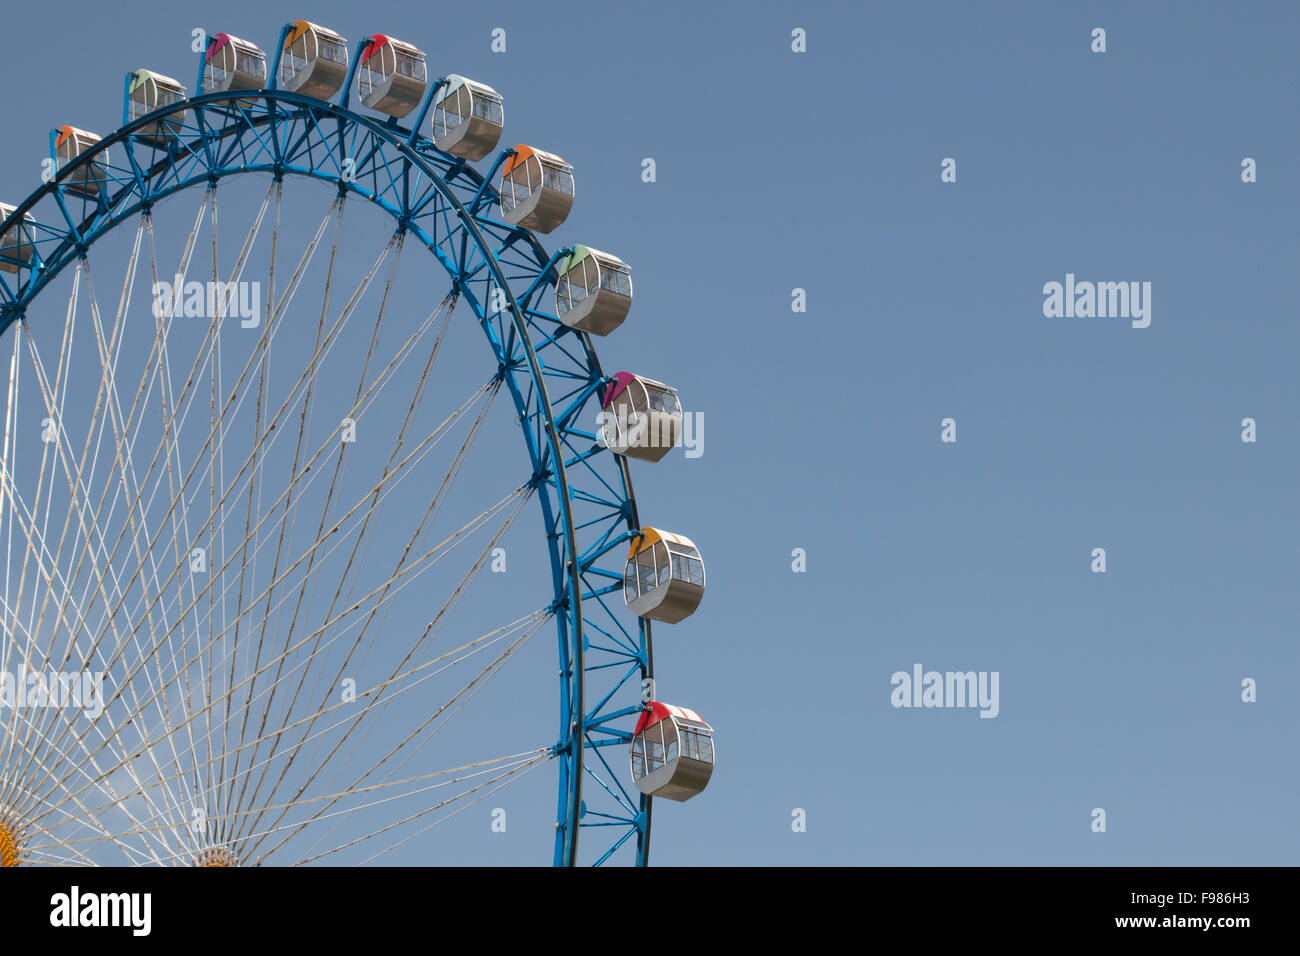 Blau ferriswheel vor blauem Himmel an einem sonnigen Tag Stockfoto